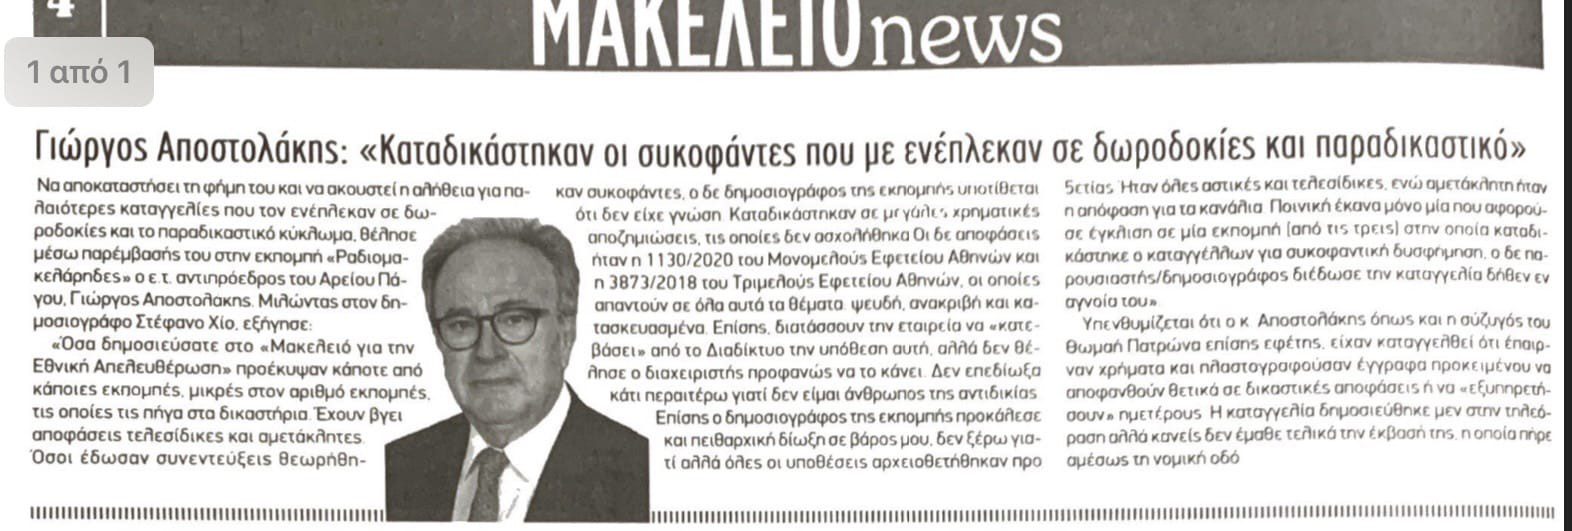 Ρίχνουν ό,τι λάσπη βρουν στη ΝΙΚΗ - Συκοφαντικό δημοσίευμα από την εφημερίδα Μακελειό για τον Γ. Αποστολάκη - «Μισή» συγγνώμη από τον Στέφανο Χίο.